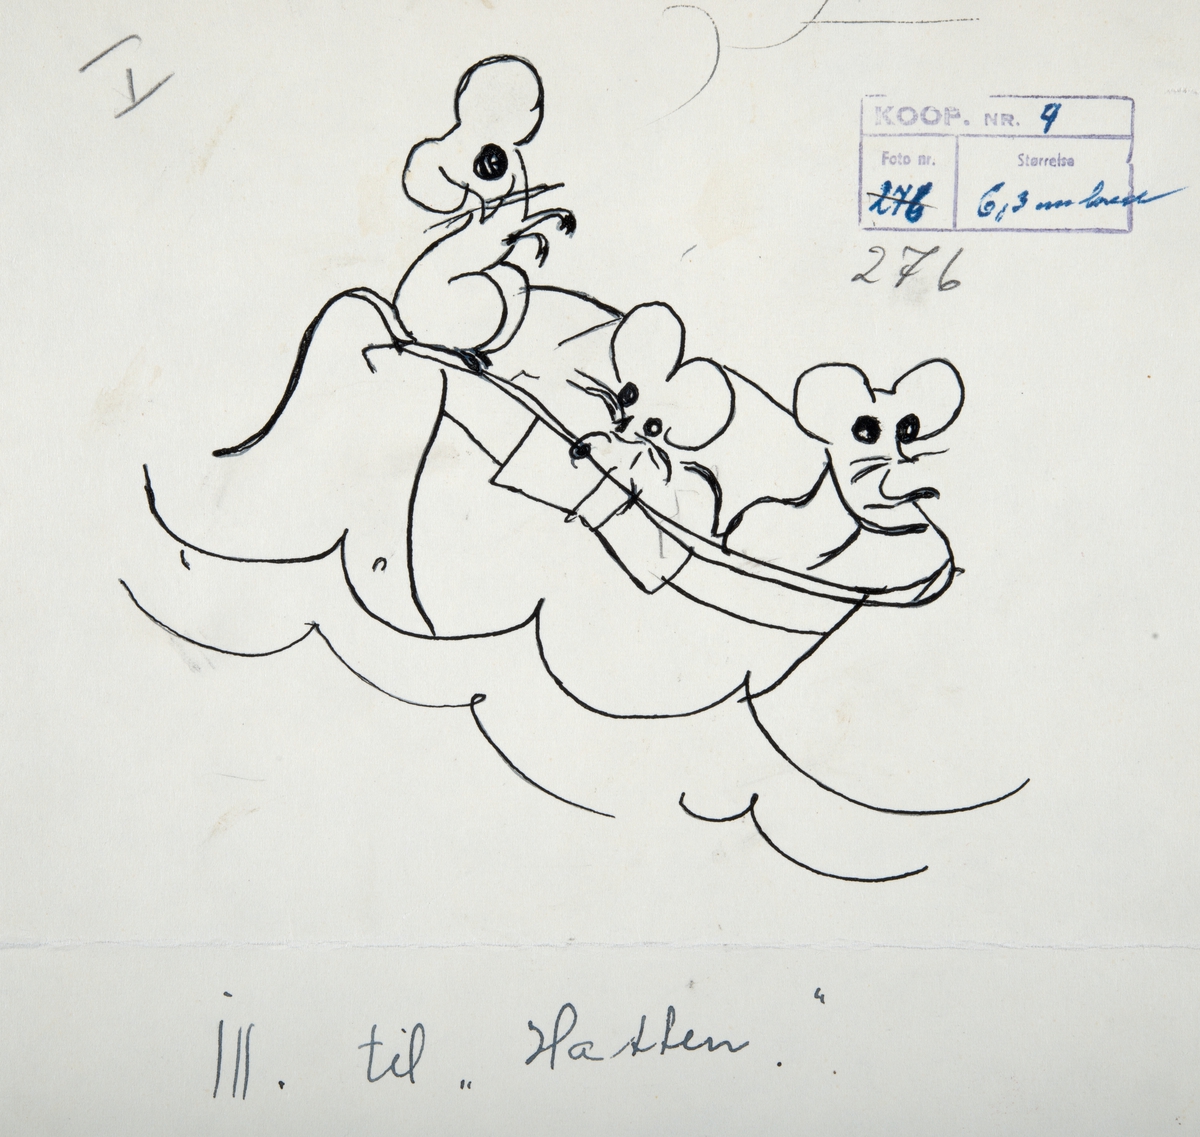 Originaltegning av Alf Prøysen for bladet ”Kooperatøren”. Setterieksemplar. Alf Prøysen hadde barnespalten klimpre-klonken i bladet fra 1950-1960. Illustrasjon, tegning. 